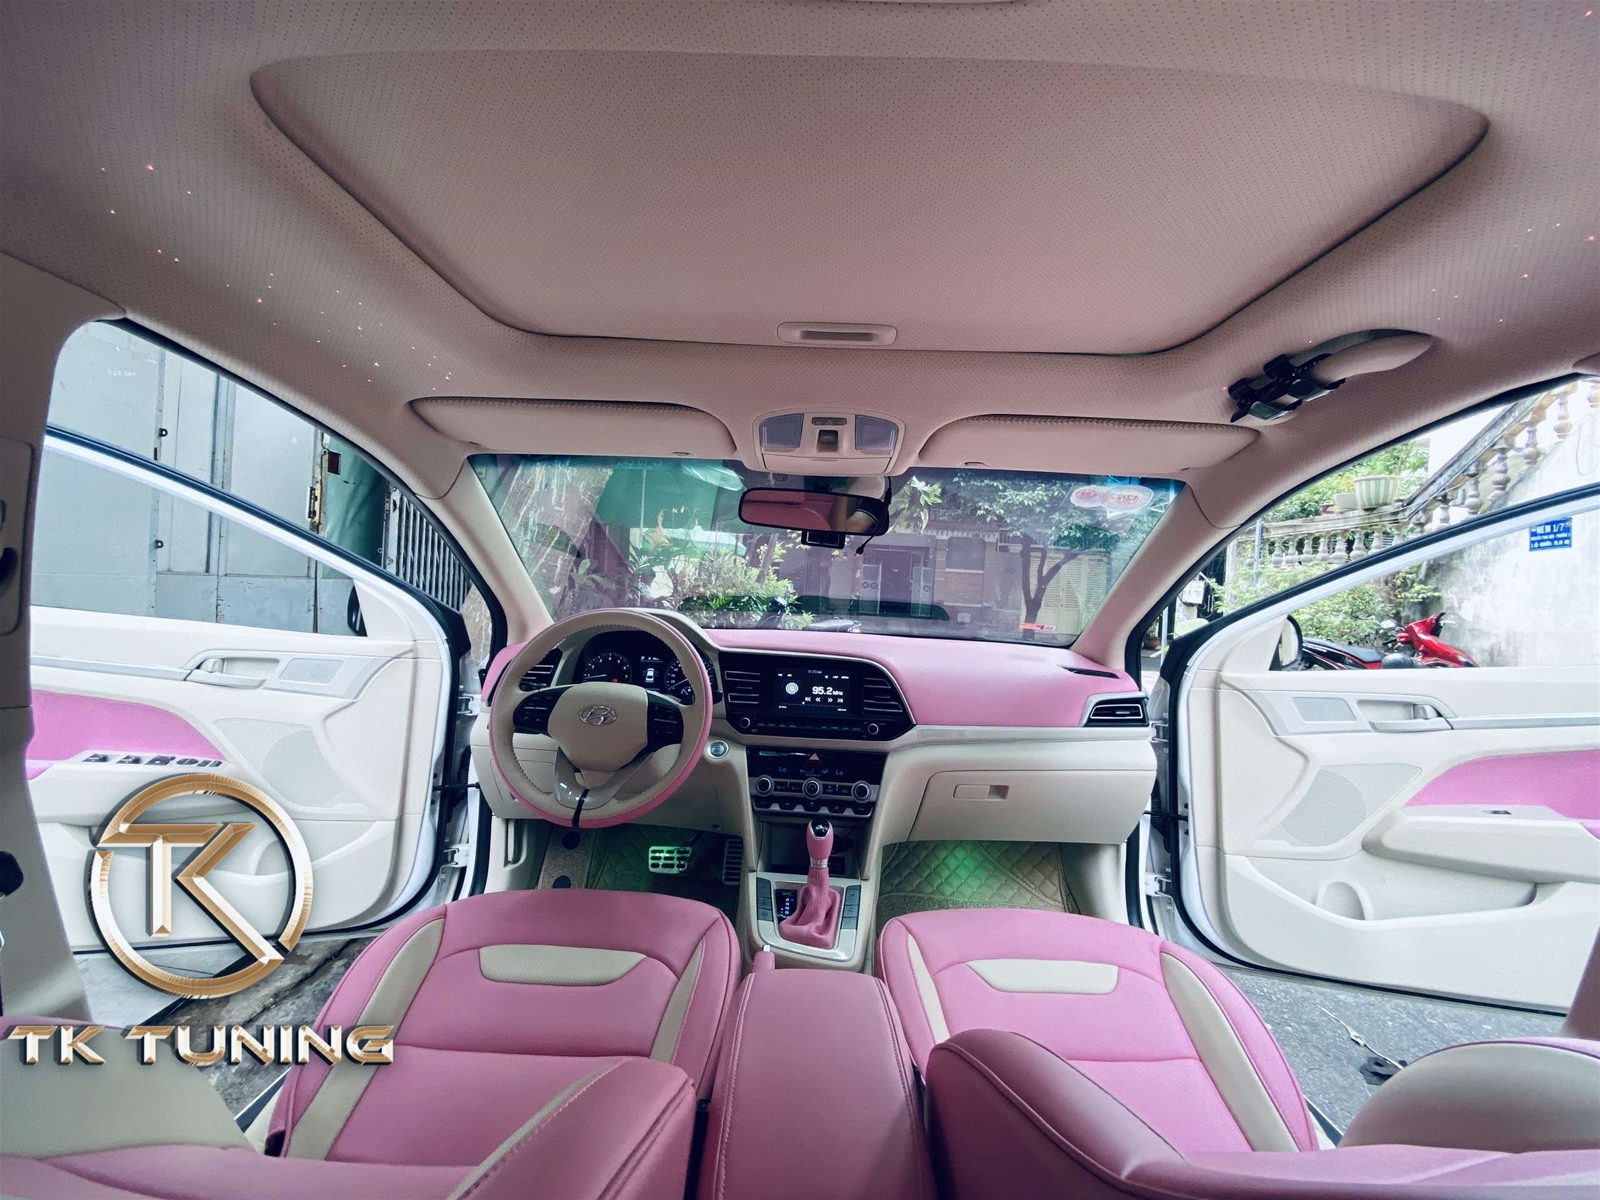 đổi màu nội thất cho xe hyundai elantra tại tphcm